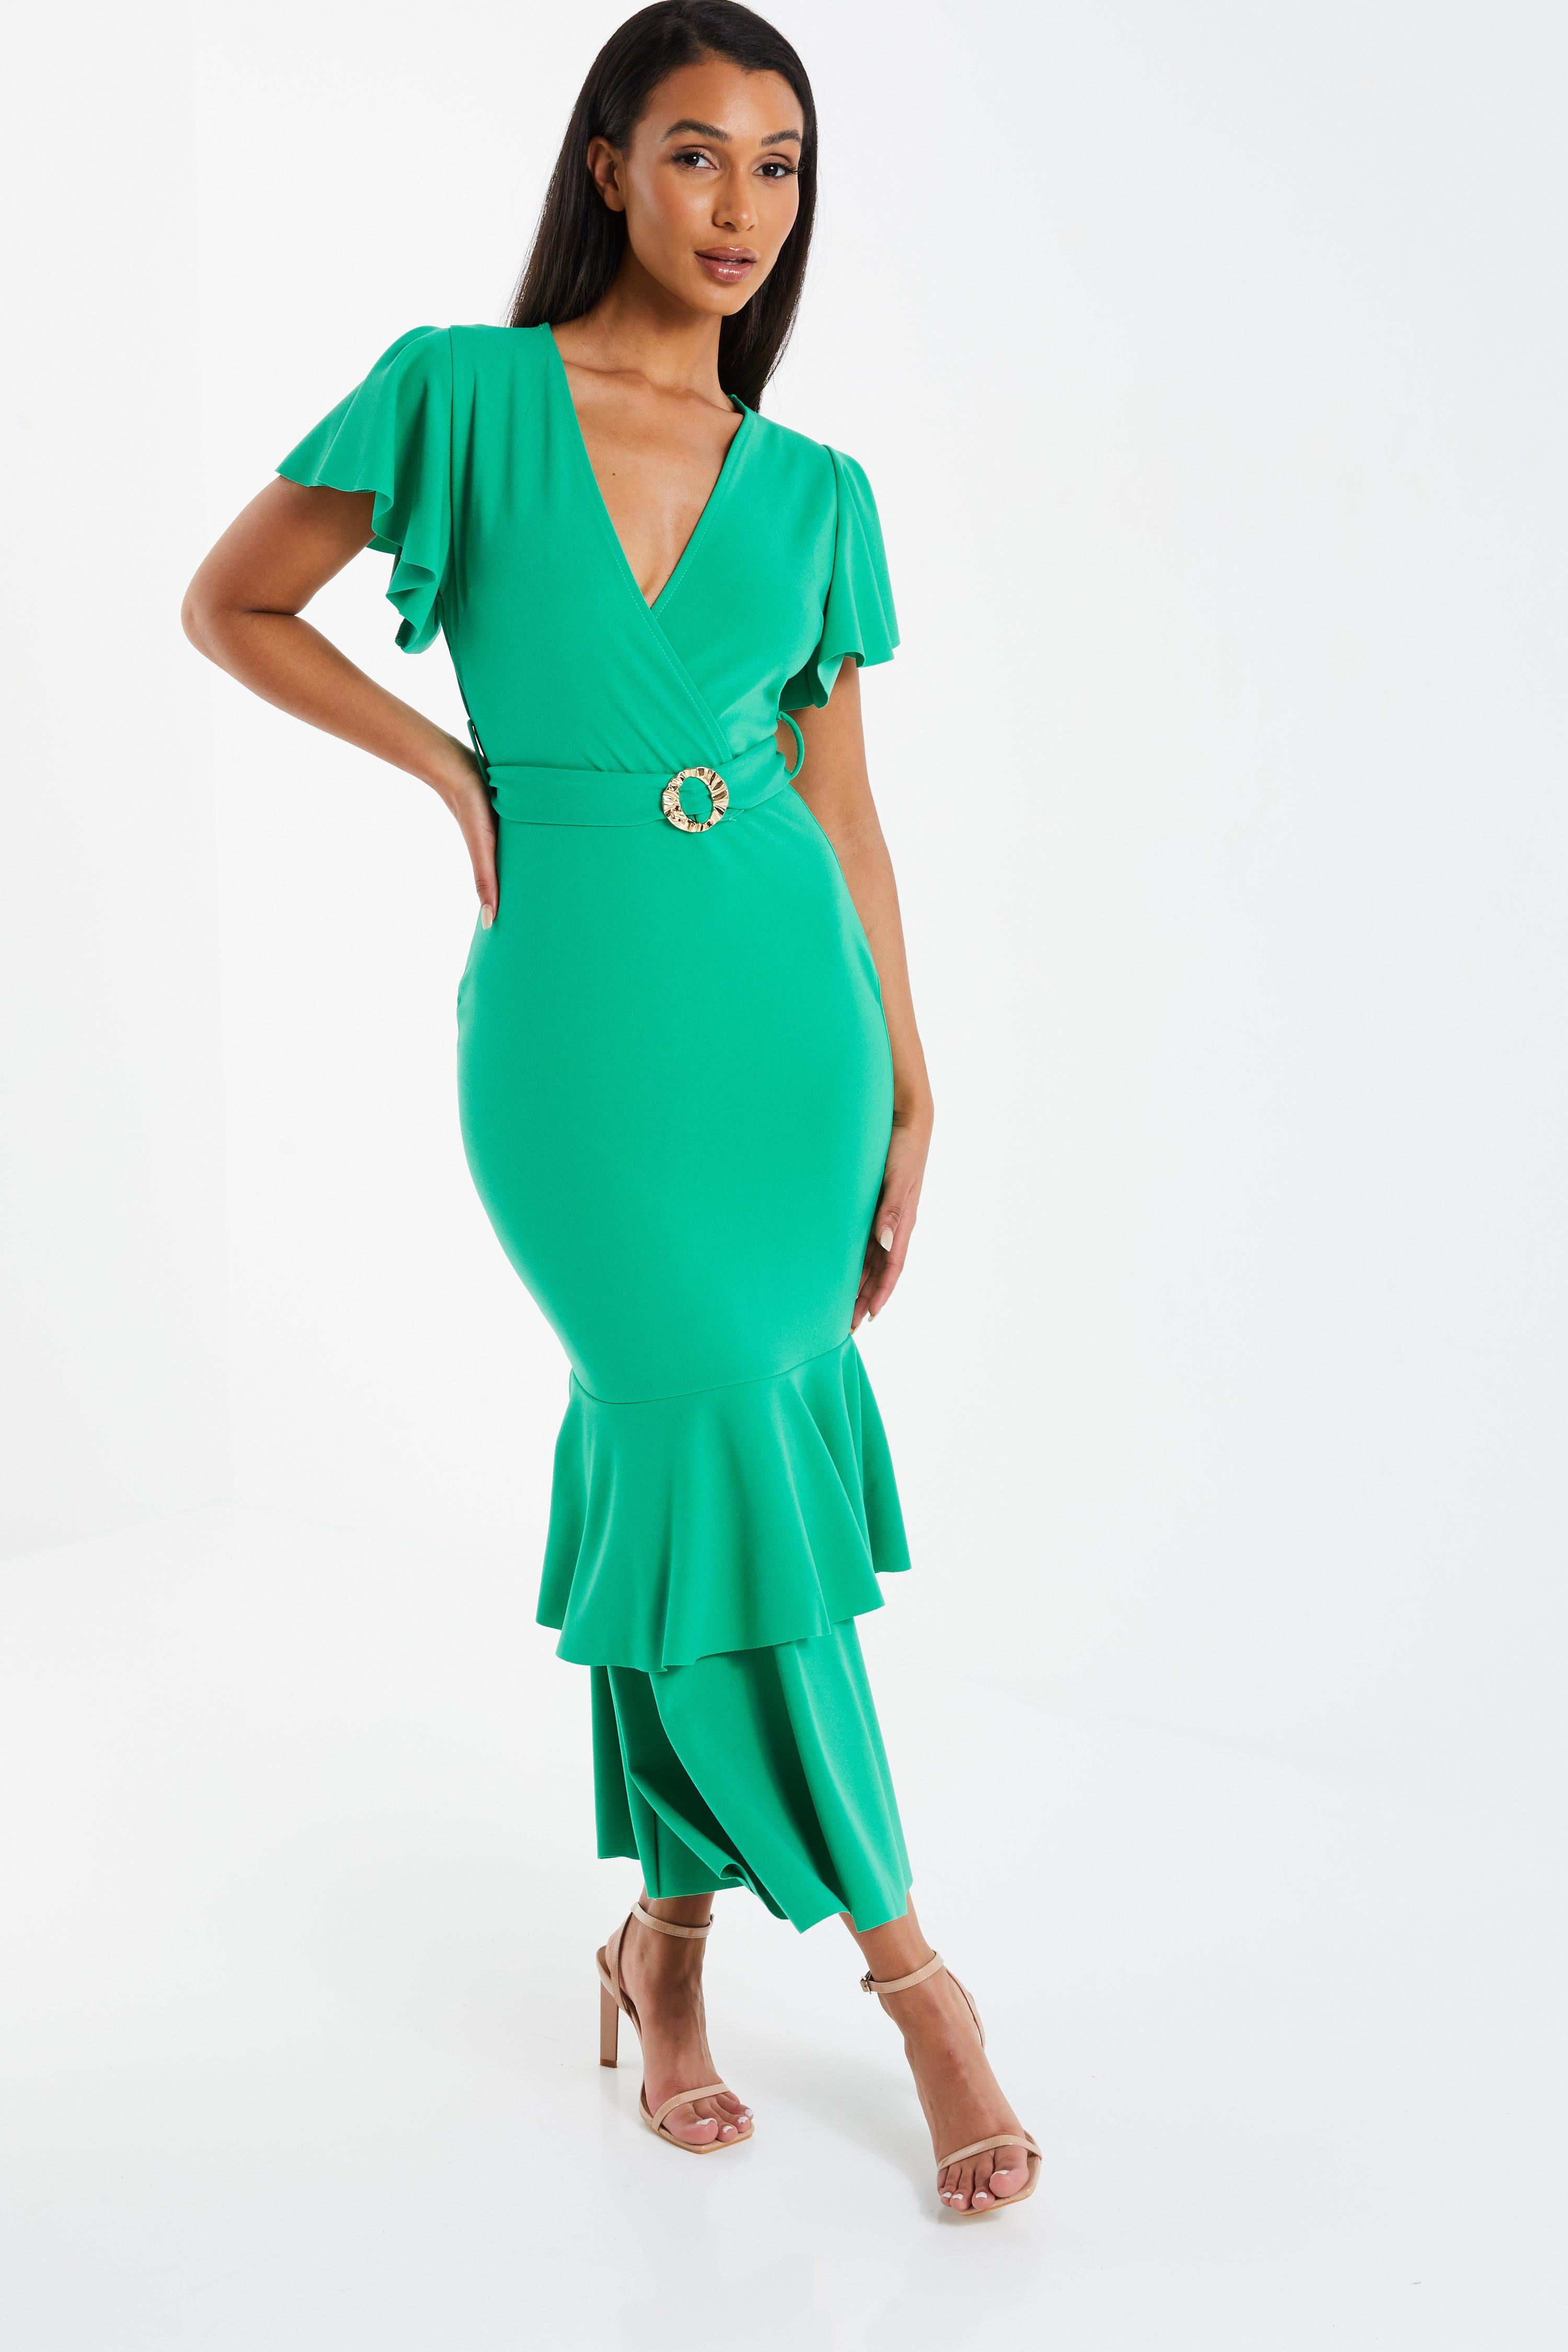 Green Dresses | Sage, Teal ☀ Lime ...